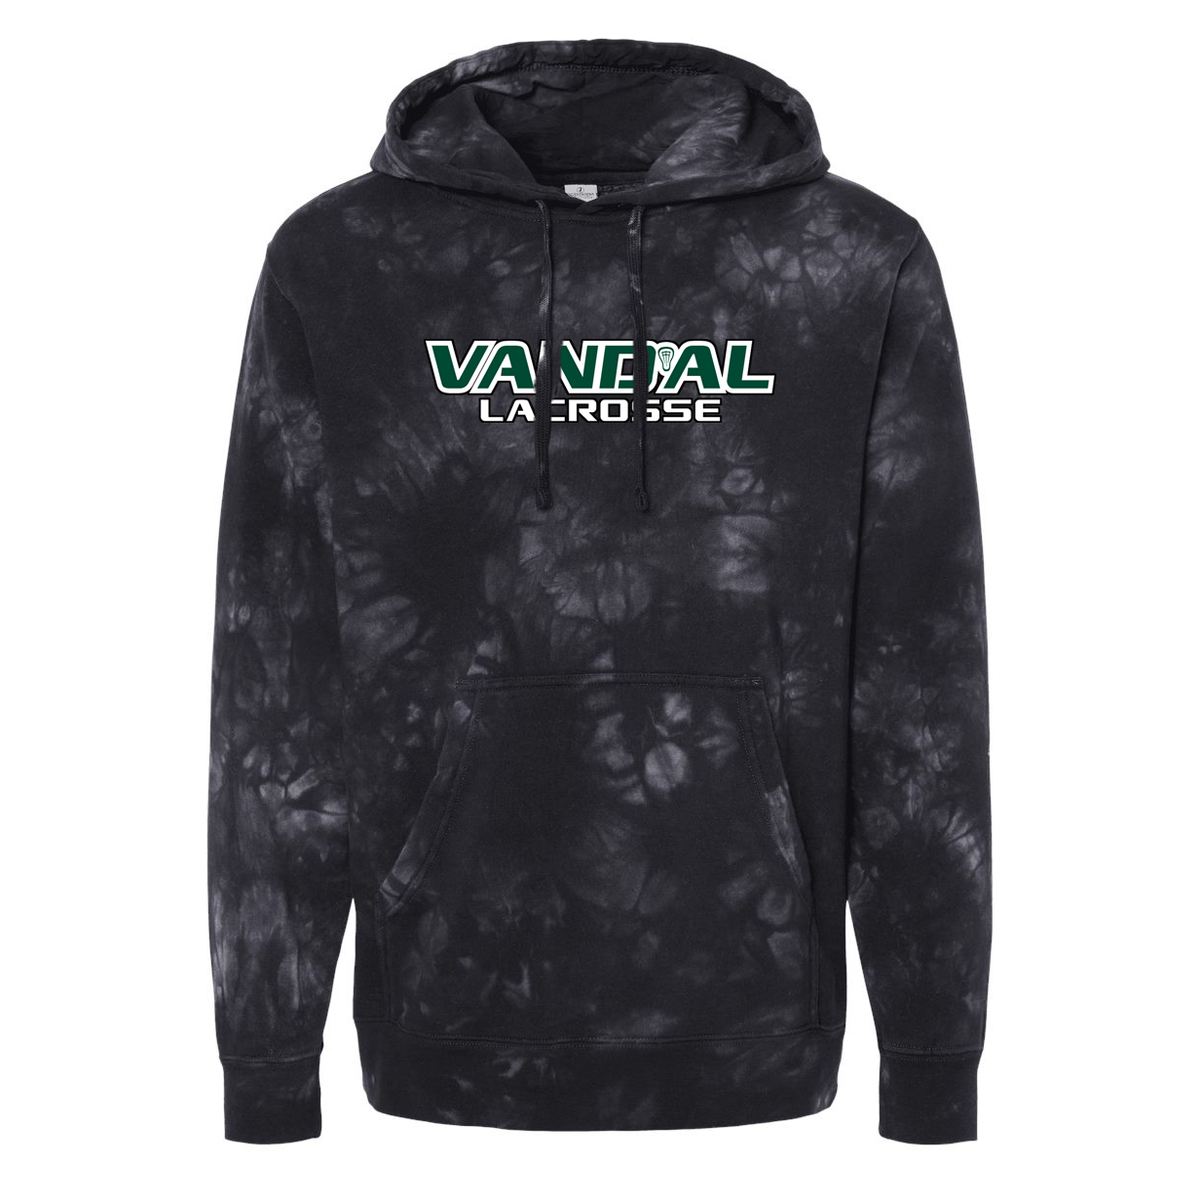 Vand'al Lacrosse Pigment-Dyed Hooded Sweatshirt